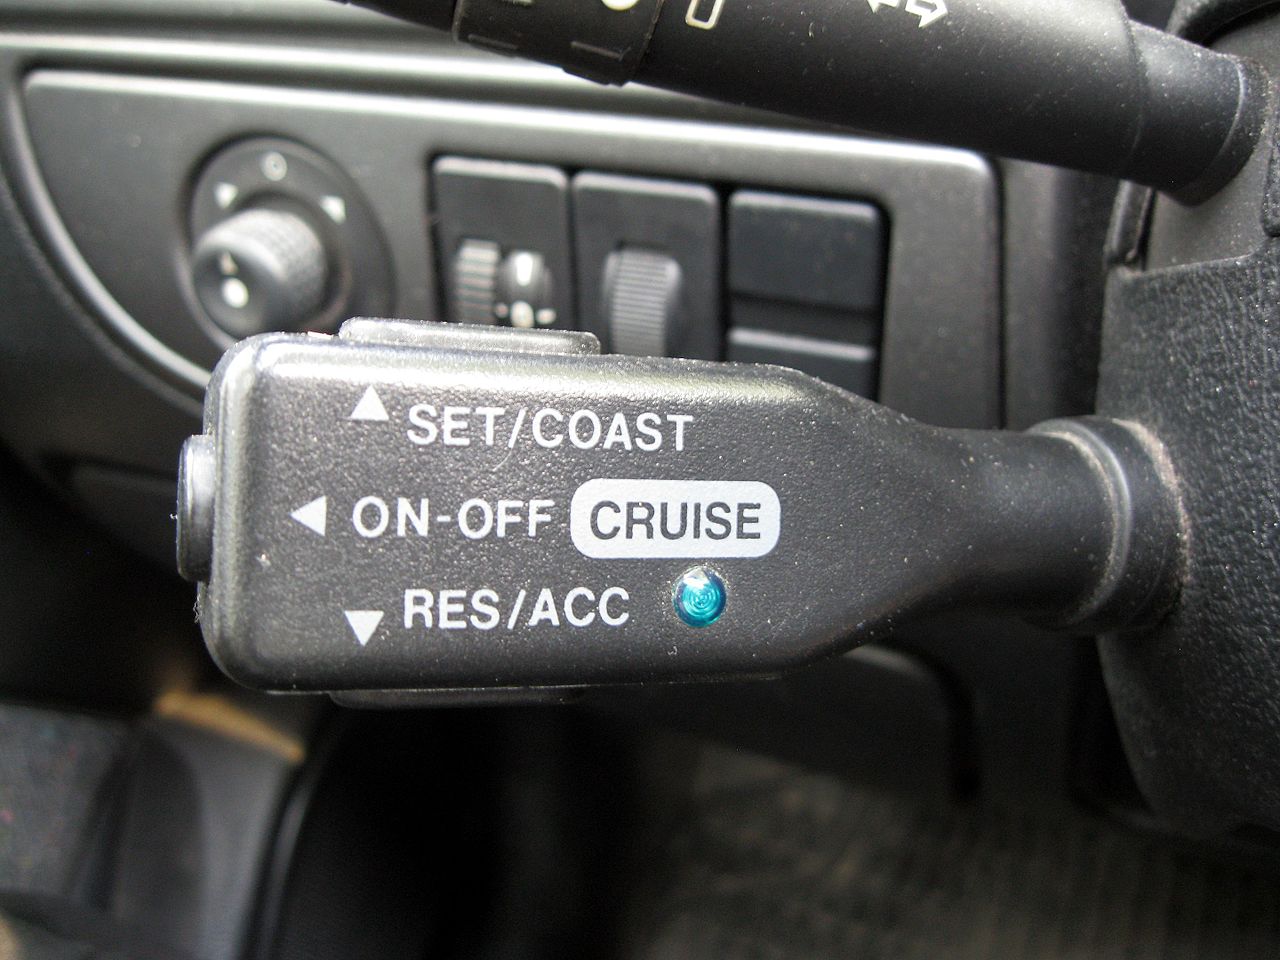 adaptive cruise control